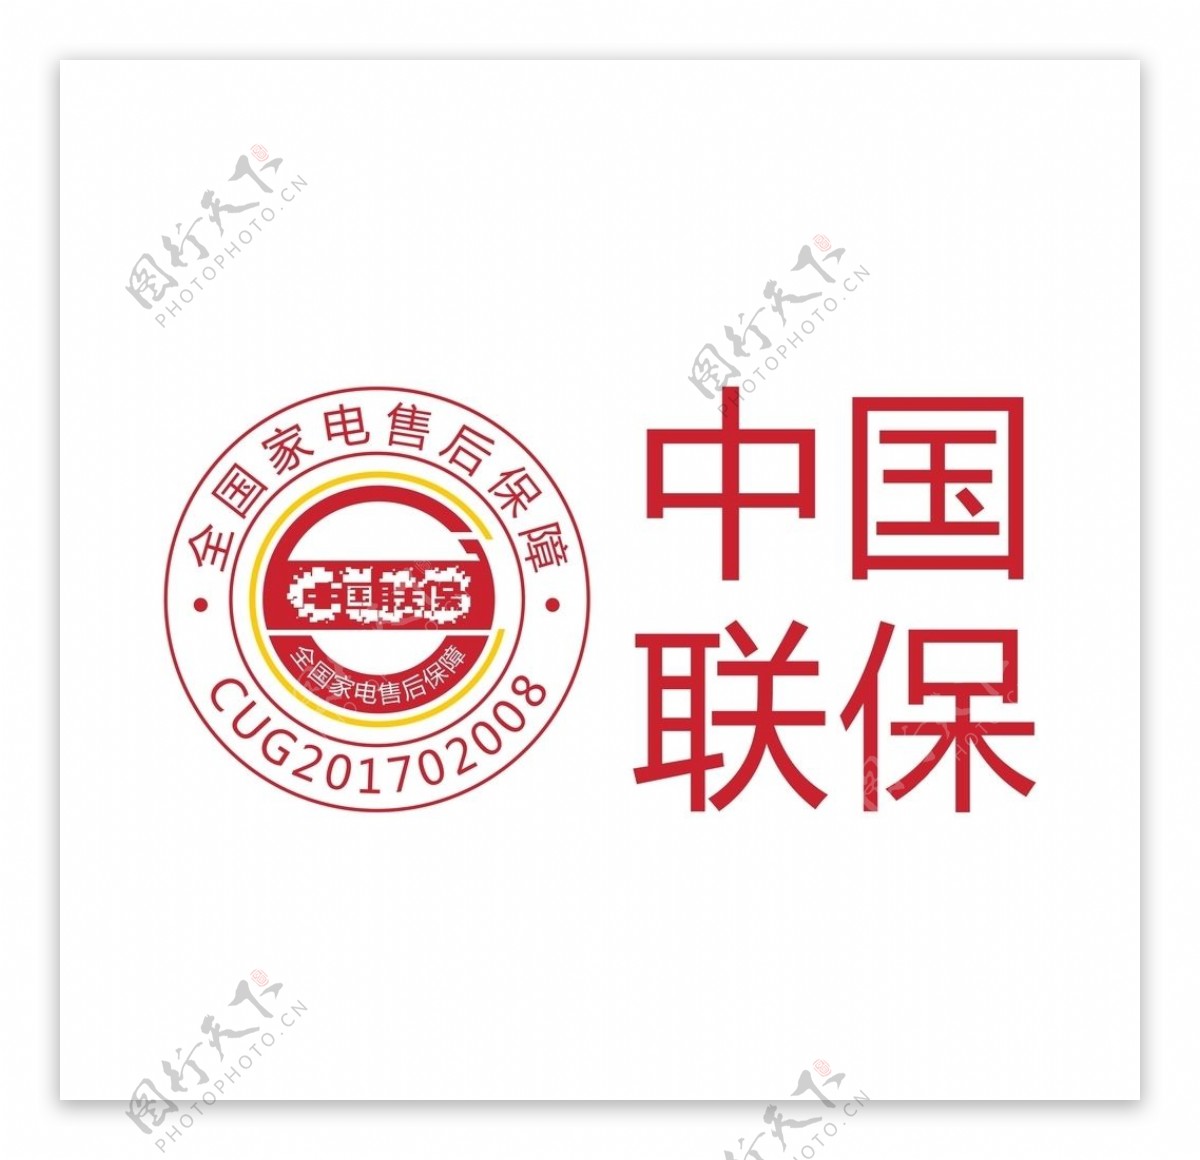 全国联保企业Logo中国联保